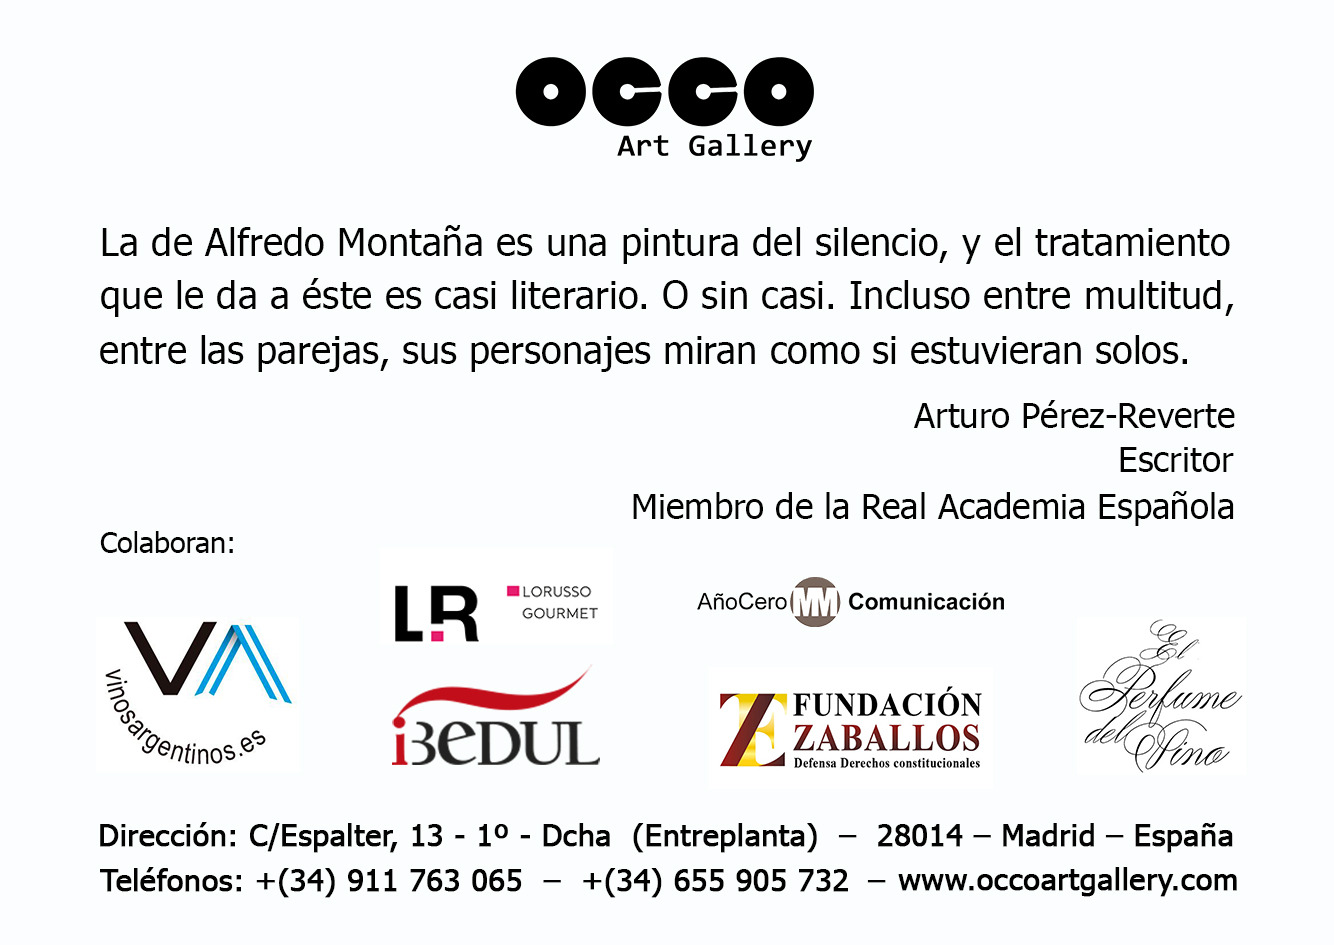 OCCO Art Gallery, exposición individual de pintura en Madrid.